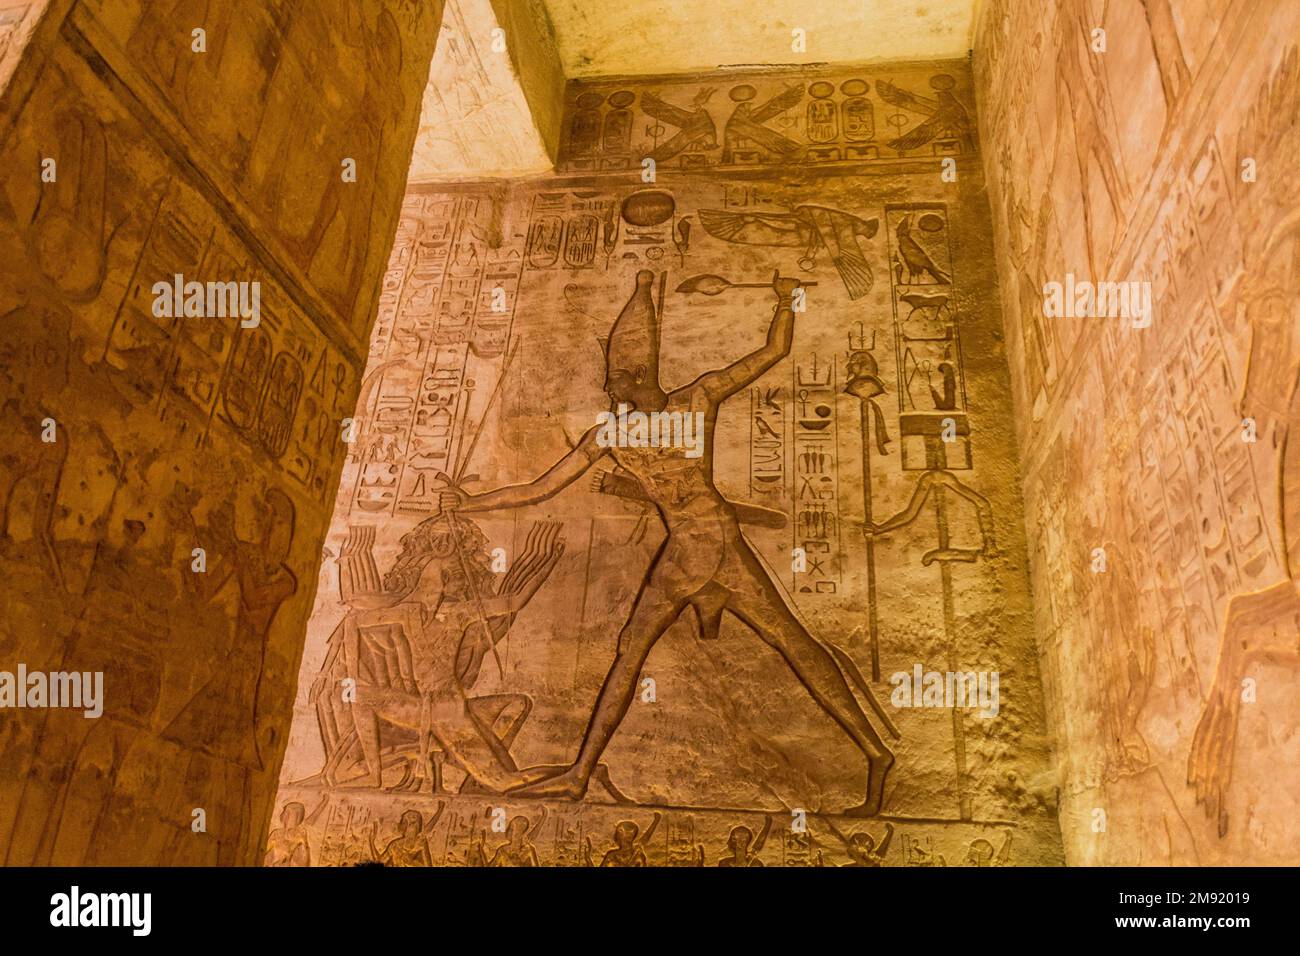 ABU SIMBEL, ÉGYPTE - 22 FÉVRIER 2019 : reliefs muraux d'une scène battůe dans la Grande salle Hypostyle du Grand Temple de Ramesses II à Abu Simbel, Égypte. Banque D'Images